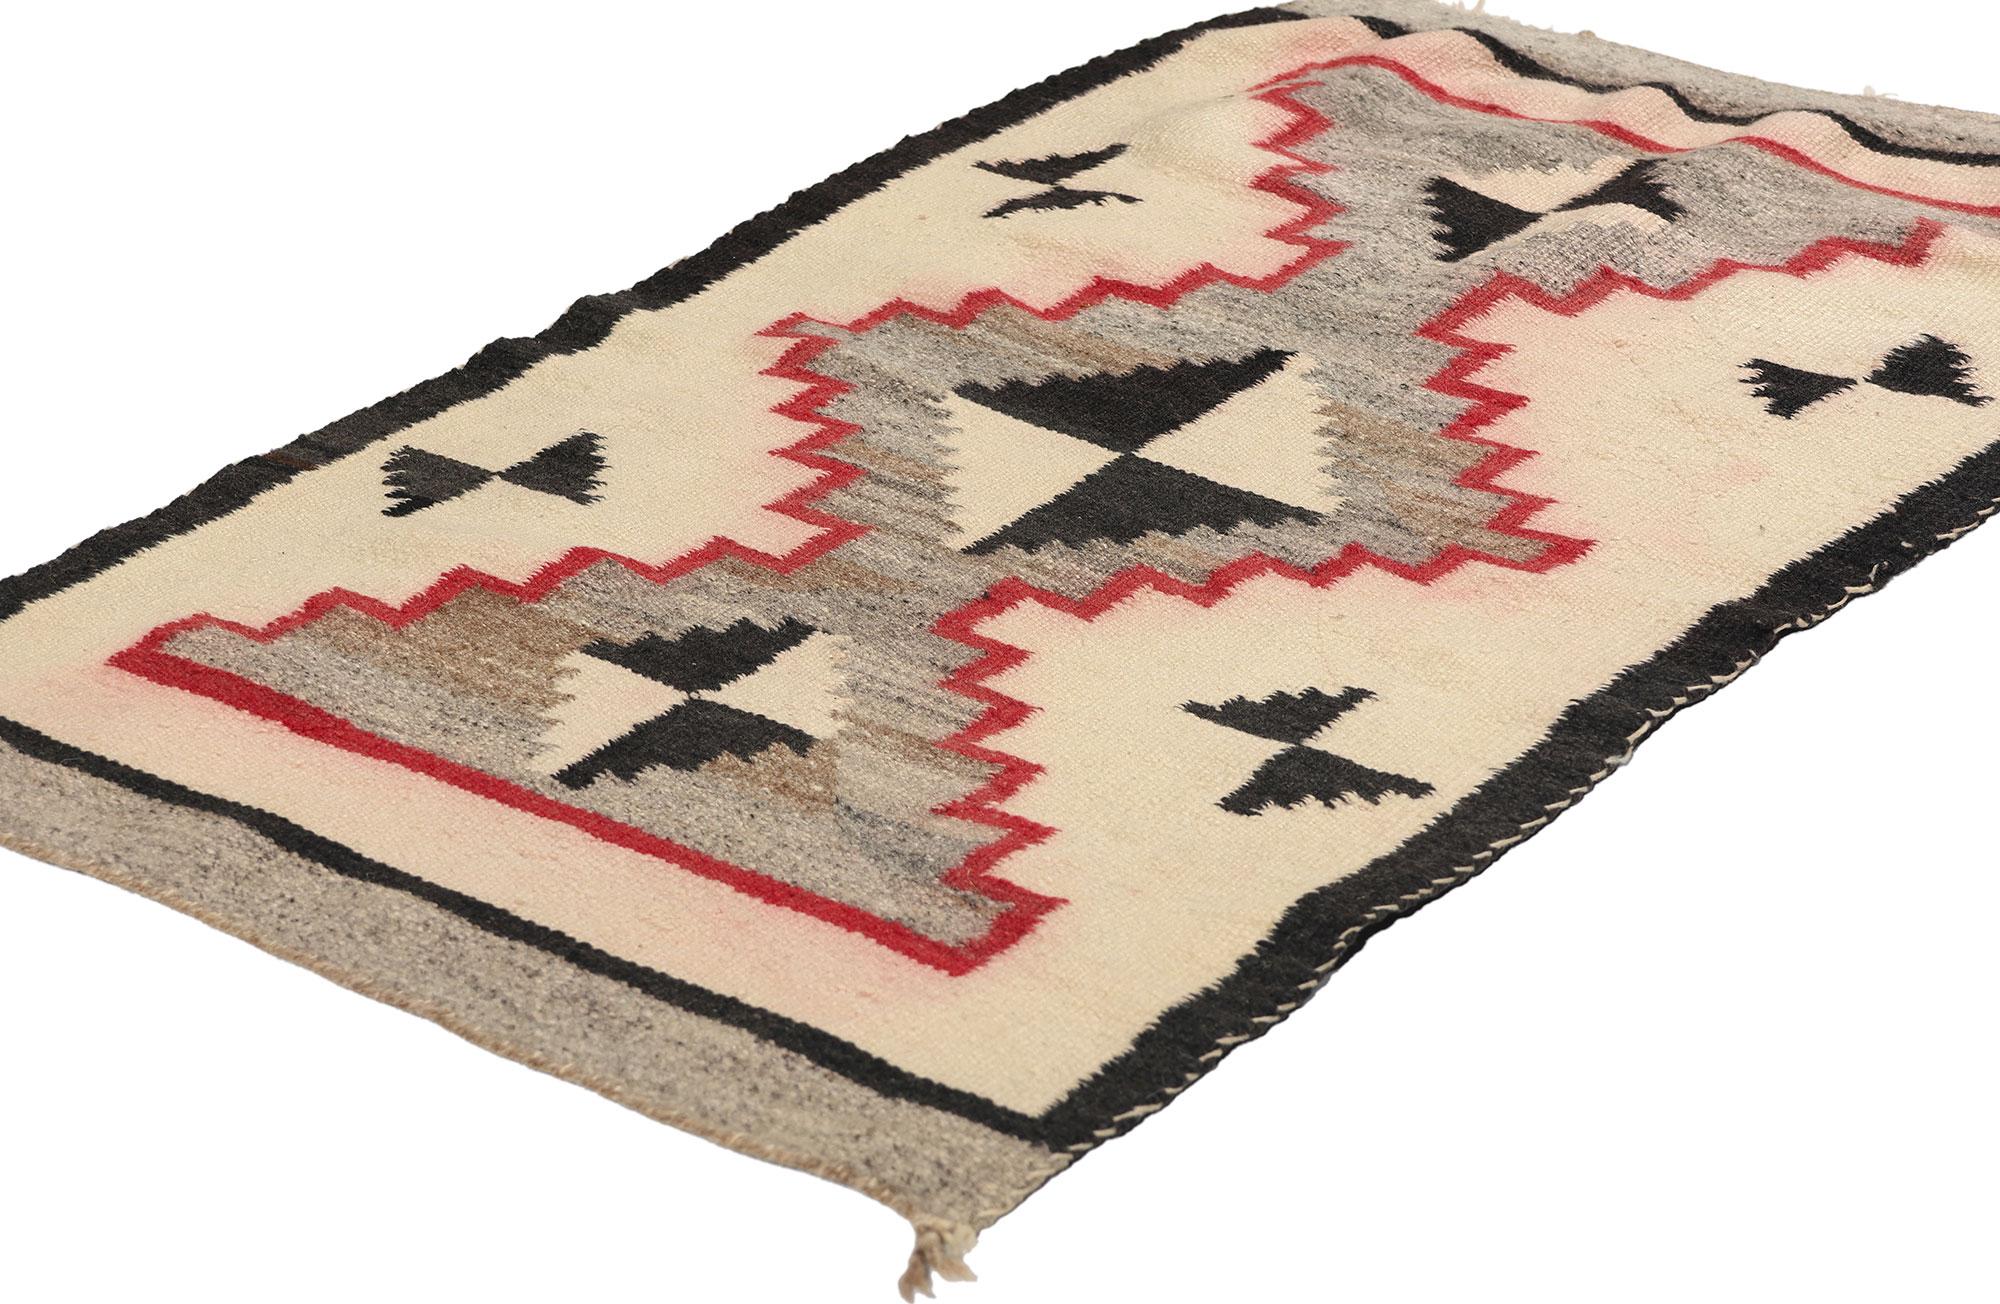 78752 Antiker Navajo-Teppich im Übergangsstil, 02'01 x 03'05. Die Navajo-Teppiche der Übergangszeit, die im späten 19. und frühen 20. Jahrhundert gewebt wurden, markieren eine Zeit des kulturellen Wandels bei den Navajo, der durch den zunehmenden